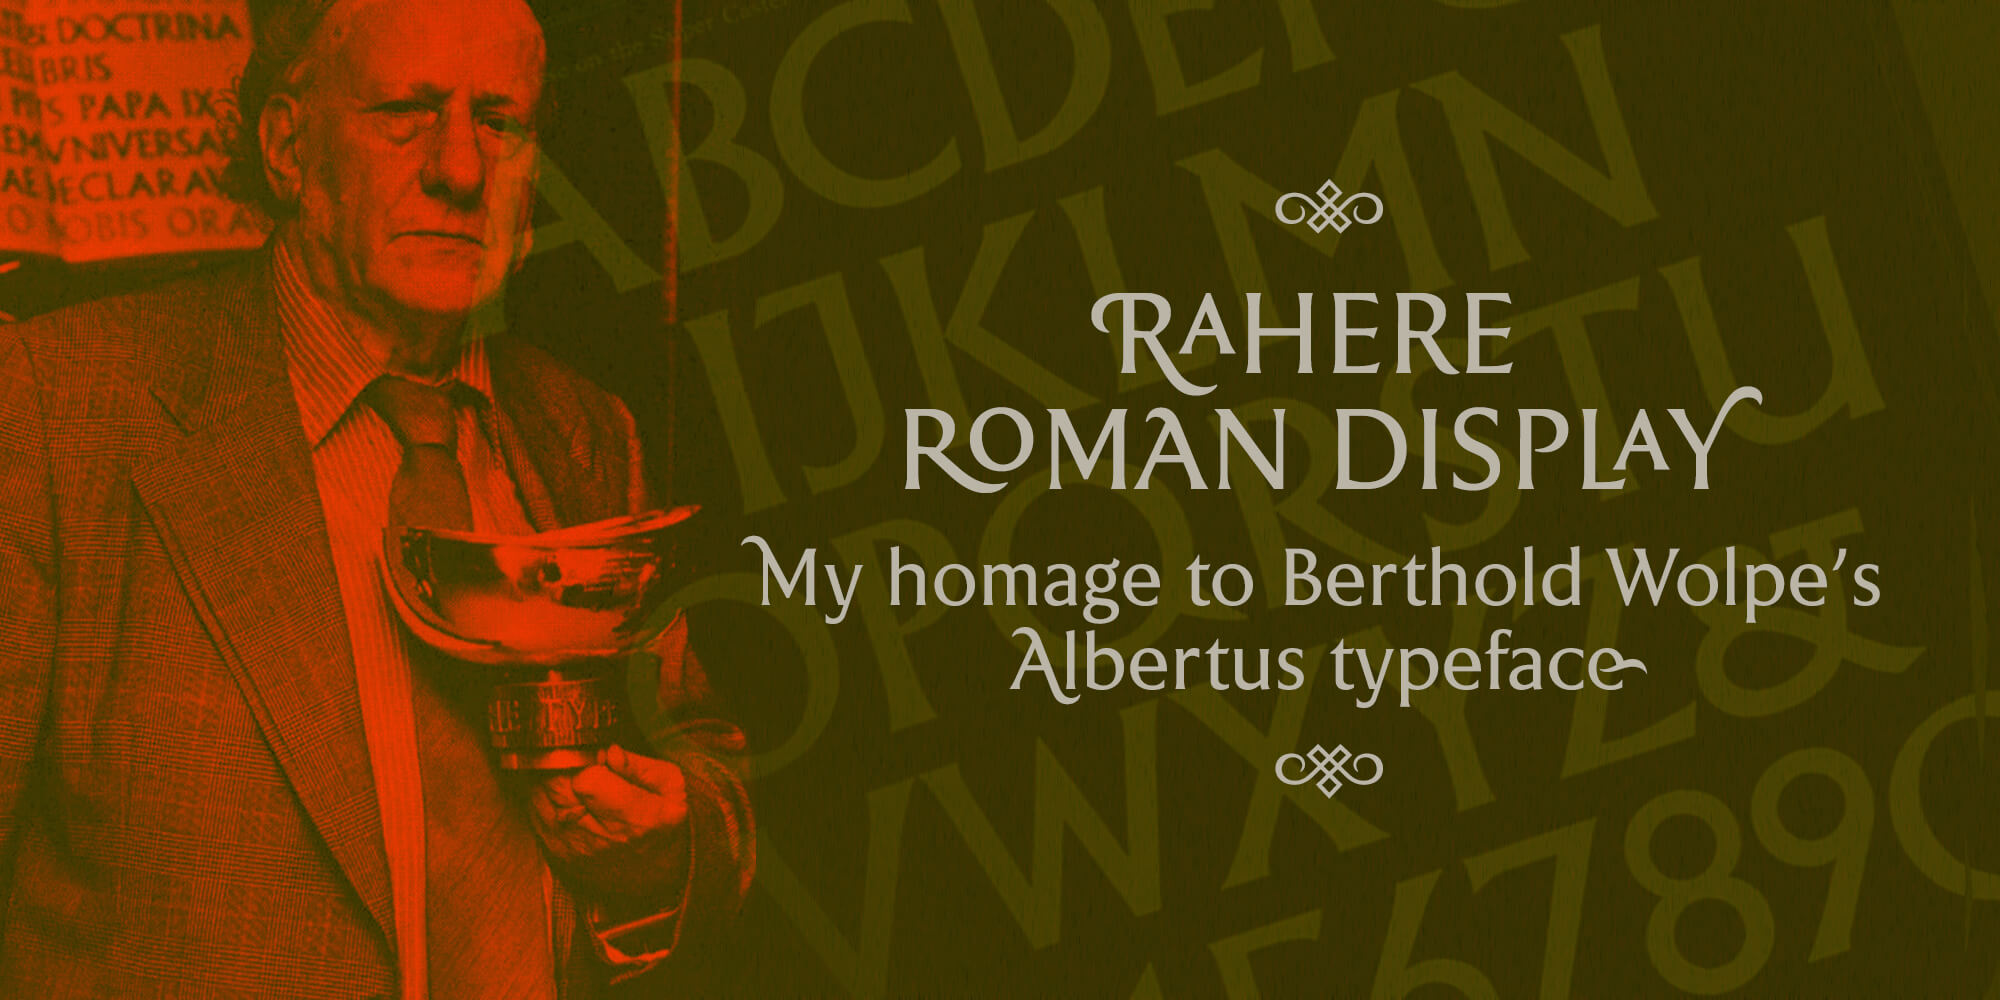 Rahere Roman Display and Albertus